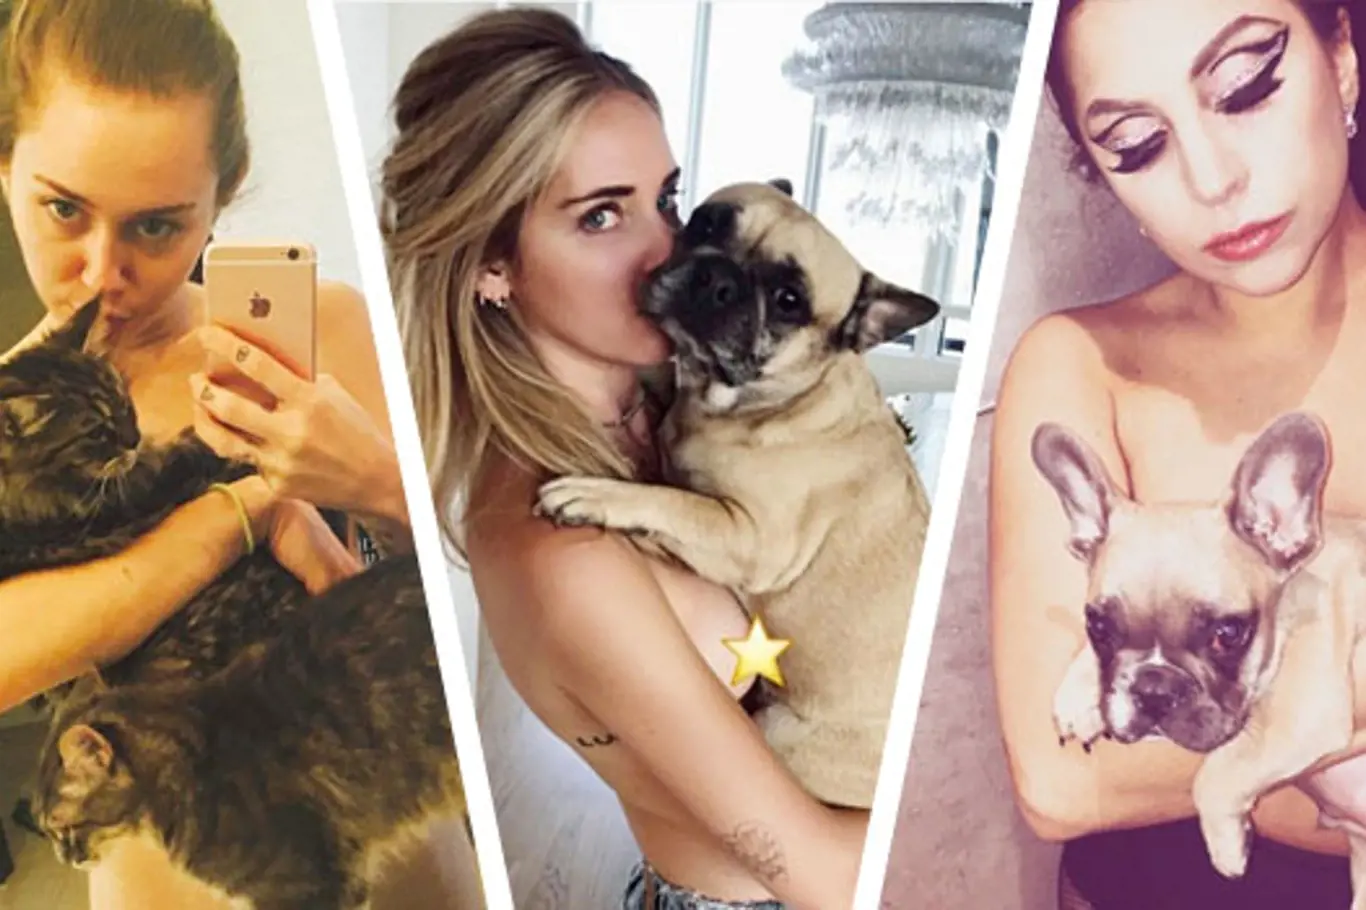 Nový trend Instagramu: Zvířata na nahém těle! Je to vkusné, nebo odporné?